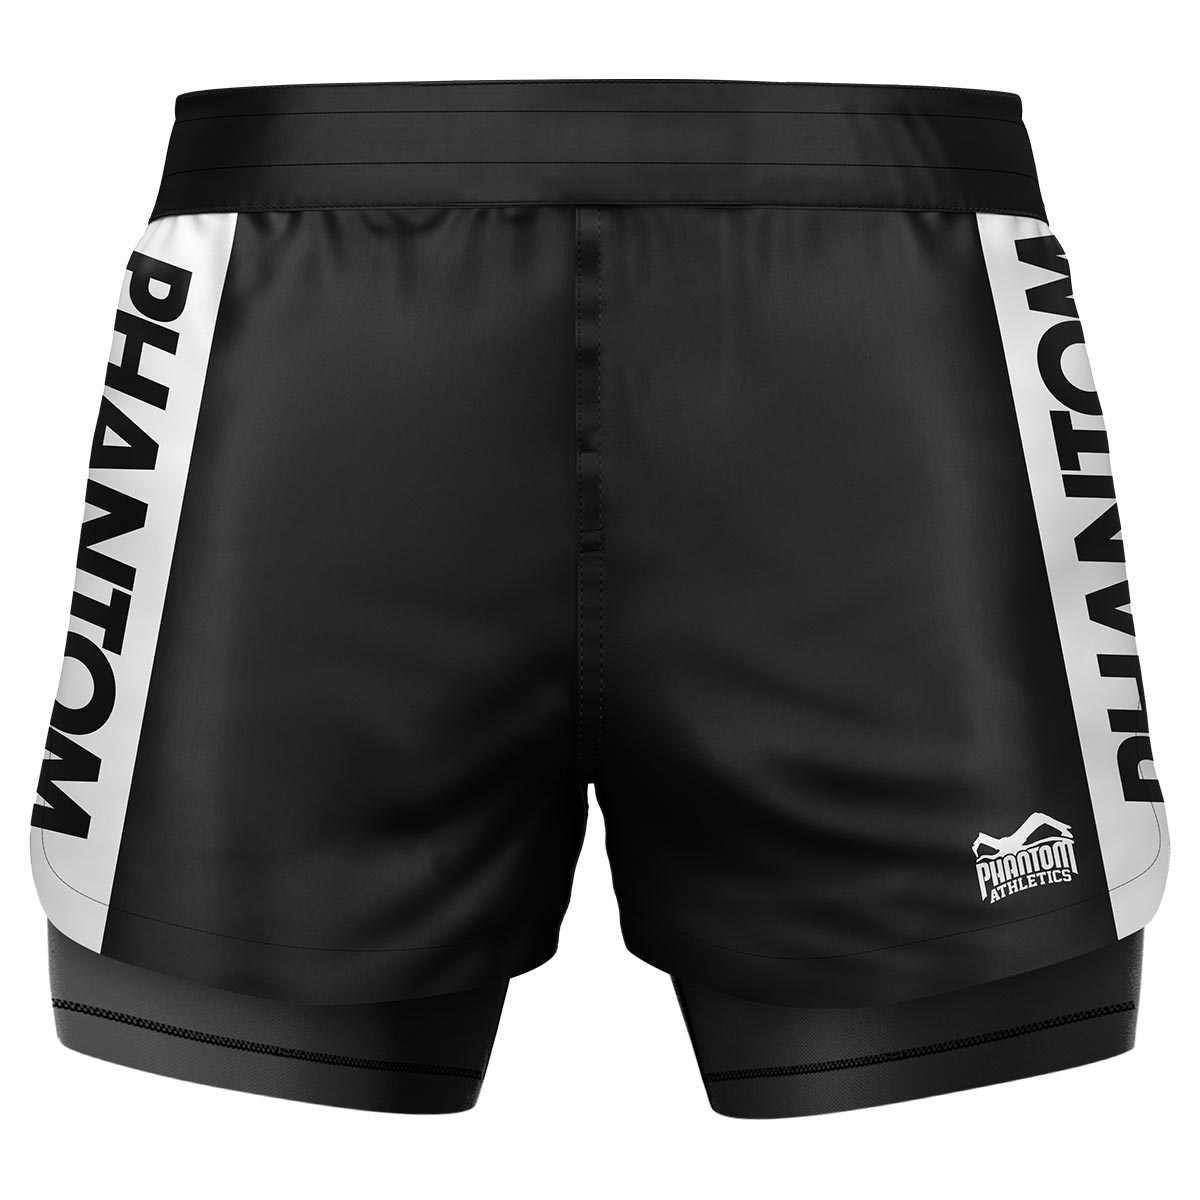 Phantom Fightshorts Fusion 2v1. Špičkové šortky pre vaše bojové umenia s integrovanými kompresnými šortkami. Ideálne pre MMA, BJJ, wrestling, grappling alebo Muay Thai. V čiernej farbe s nápisom PHANTOM .